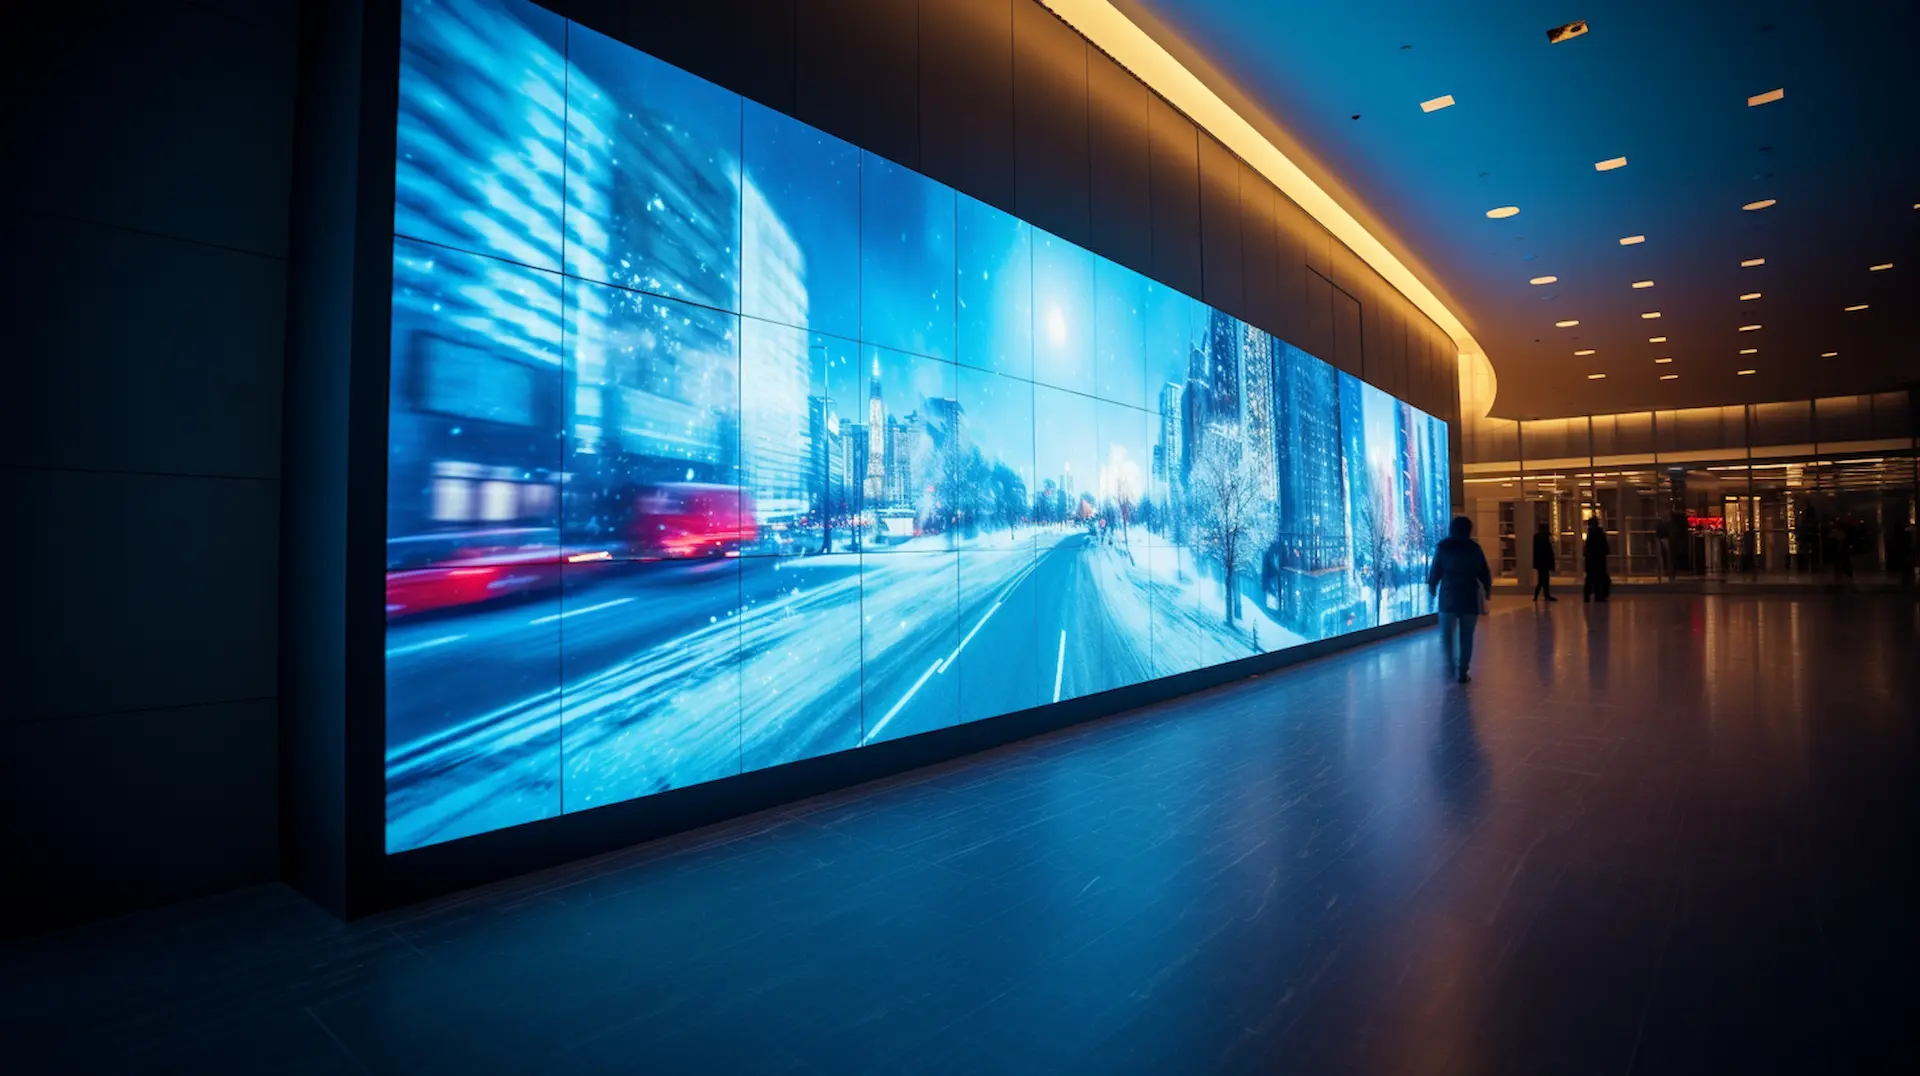 Eine große, lebendige Anzeige zeigt eine beschleunigte Stadtstraße in einer modernen, beleuchteten Innenhalle, wo Personen vorbeigehen.